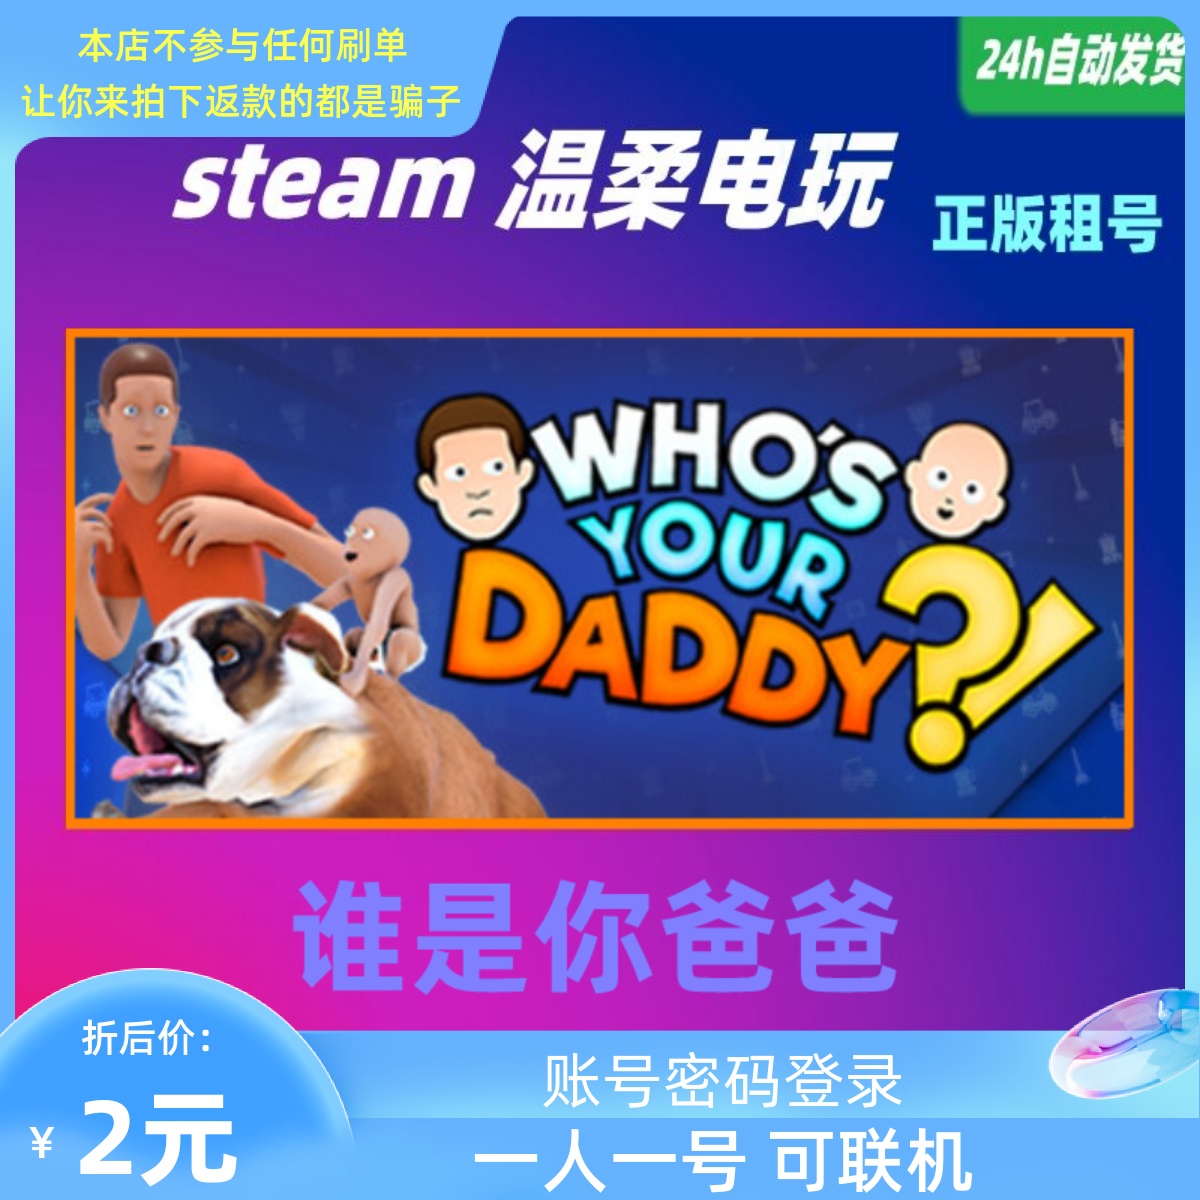 谁是你爸爸 steam正版游戏出租号  Who's Your Daddy?! 谁是老爸